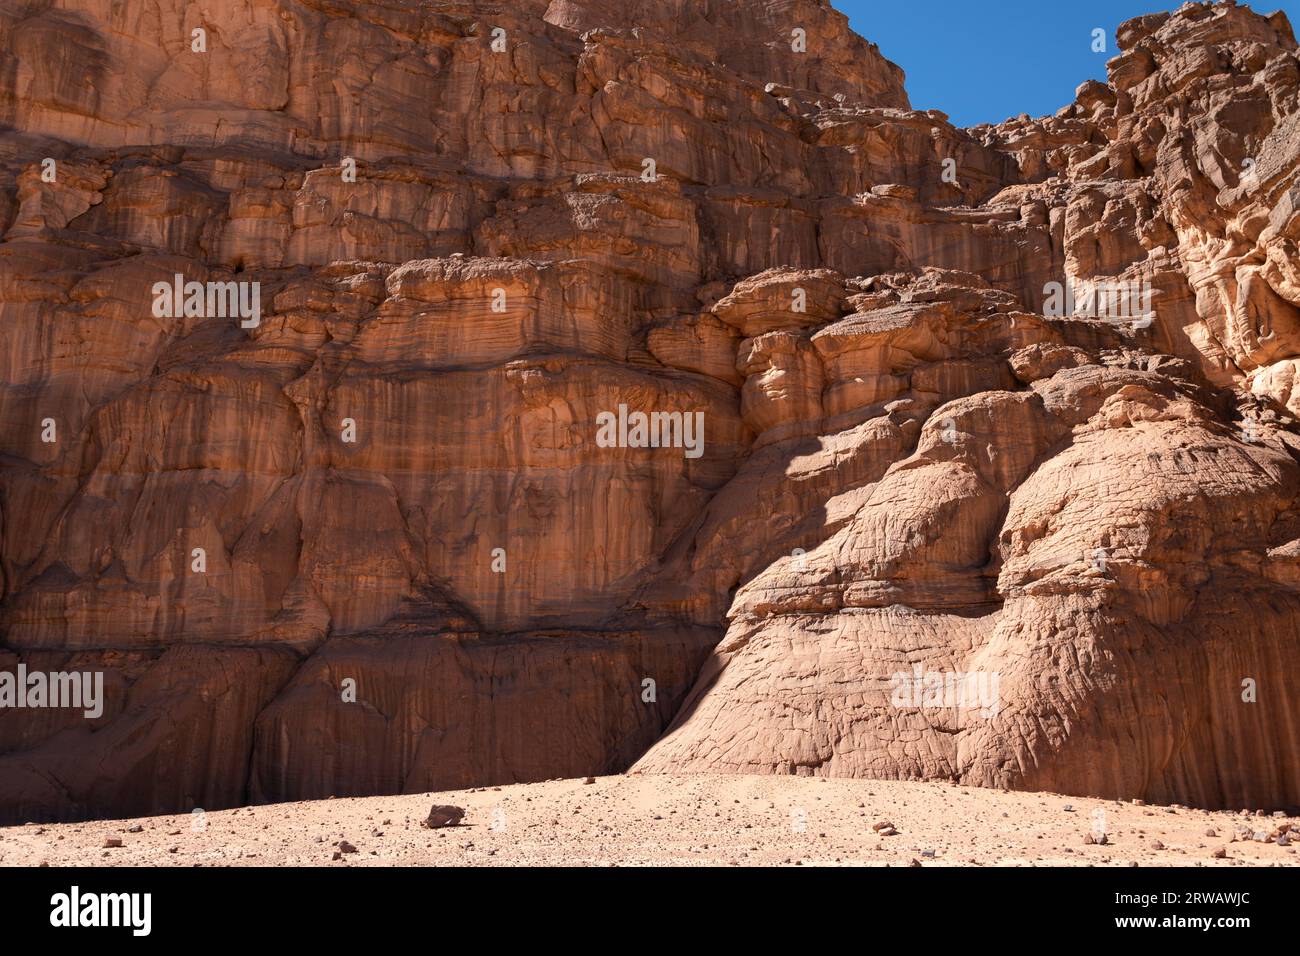 Mountains of the Sahara desert Stock Photo